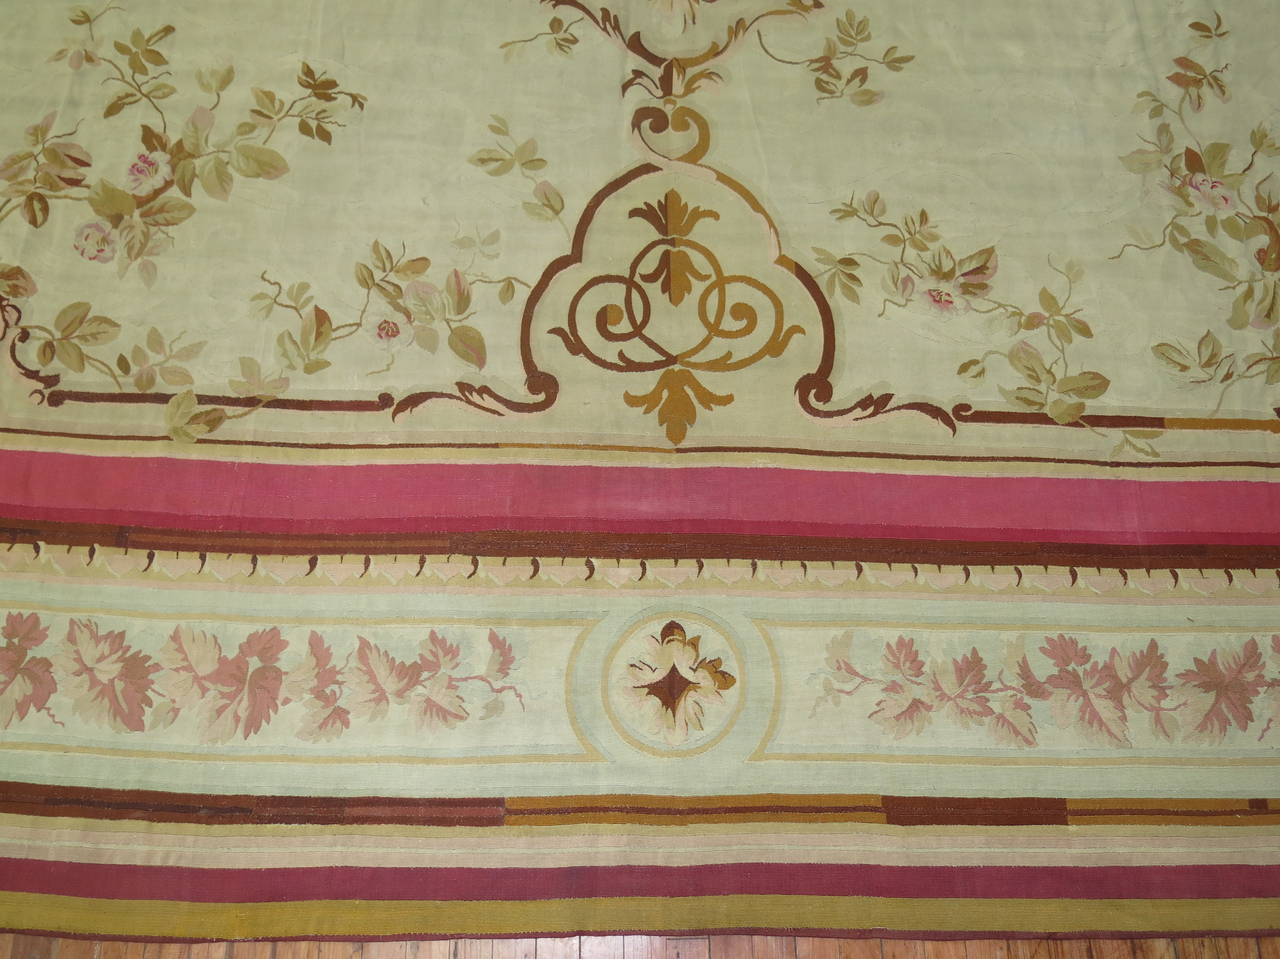 Aubusson français classique du XVIIIe siècle avec un fond ivoire. Accents de rose et de brun. Très bon état général.

Taille : 13'5